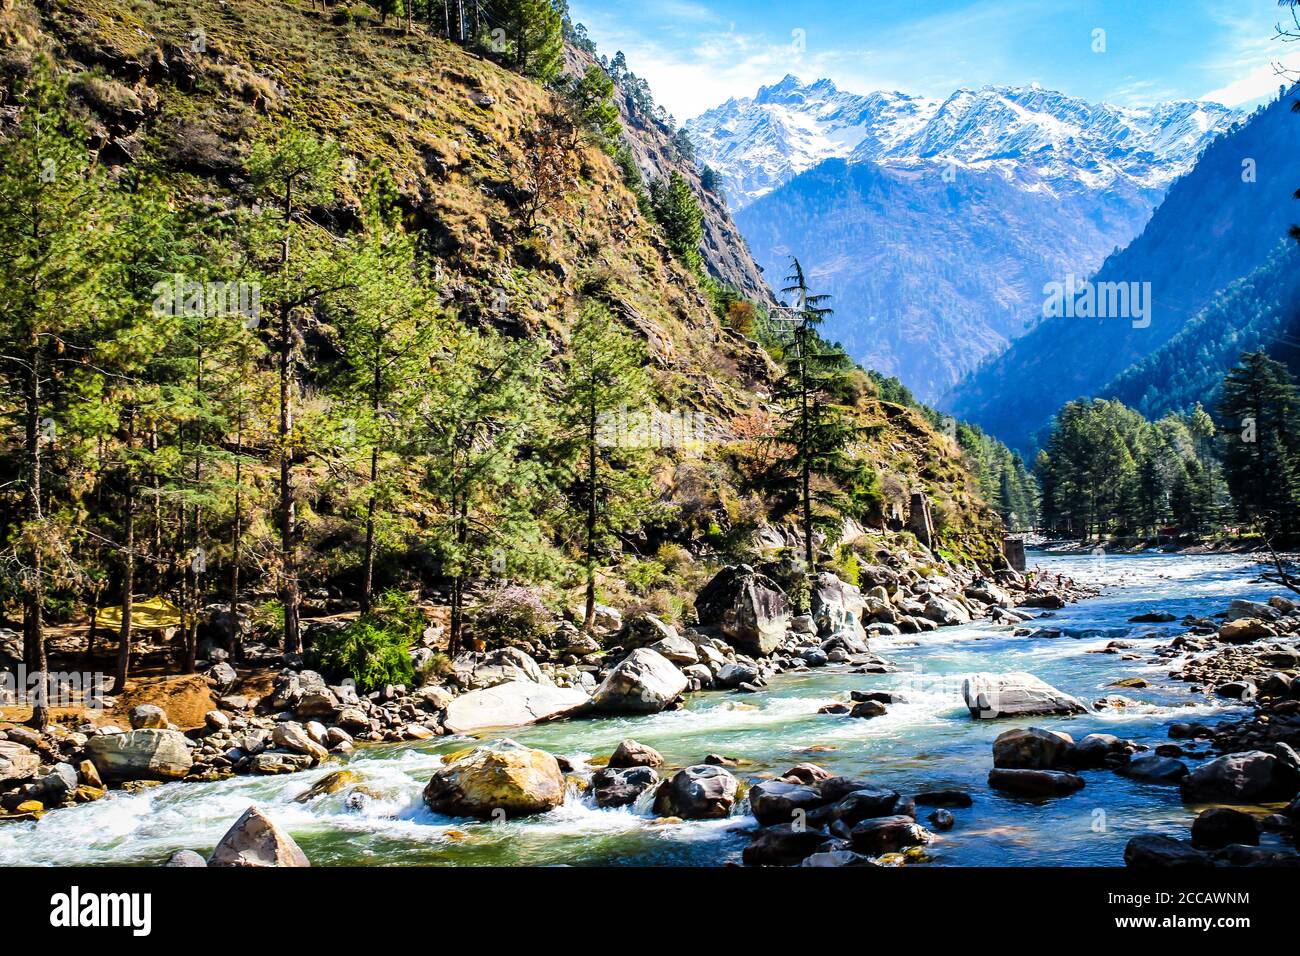 Kasol Manali - fiume Parvati che scorre sulle montagne innevate di Himachal Pradesh, India. Fiume acqua che scorre nella valle degli dei. Himachal Pradesh. Foto Stock